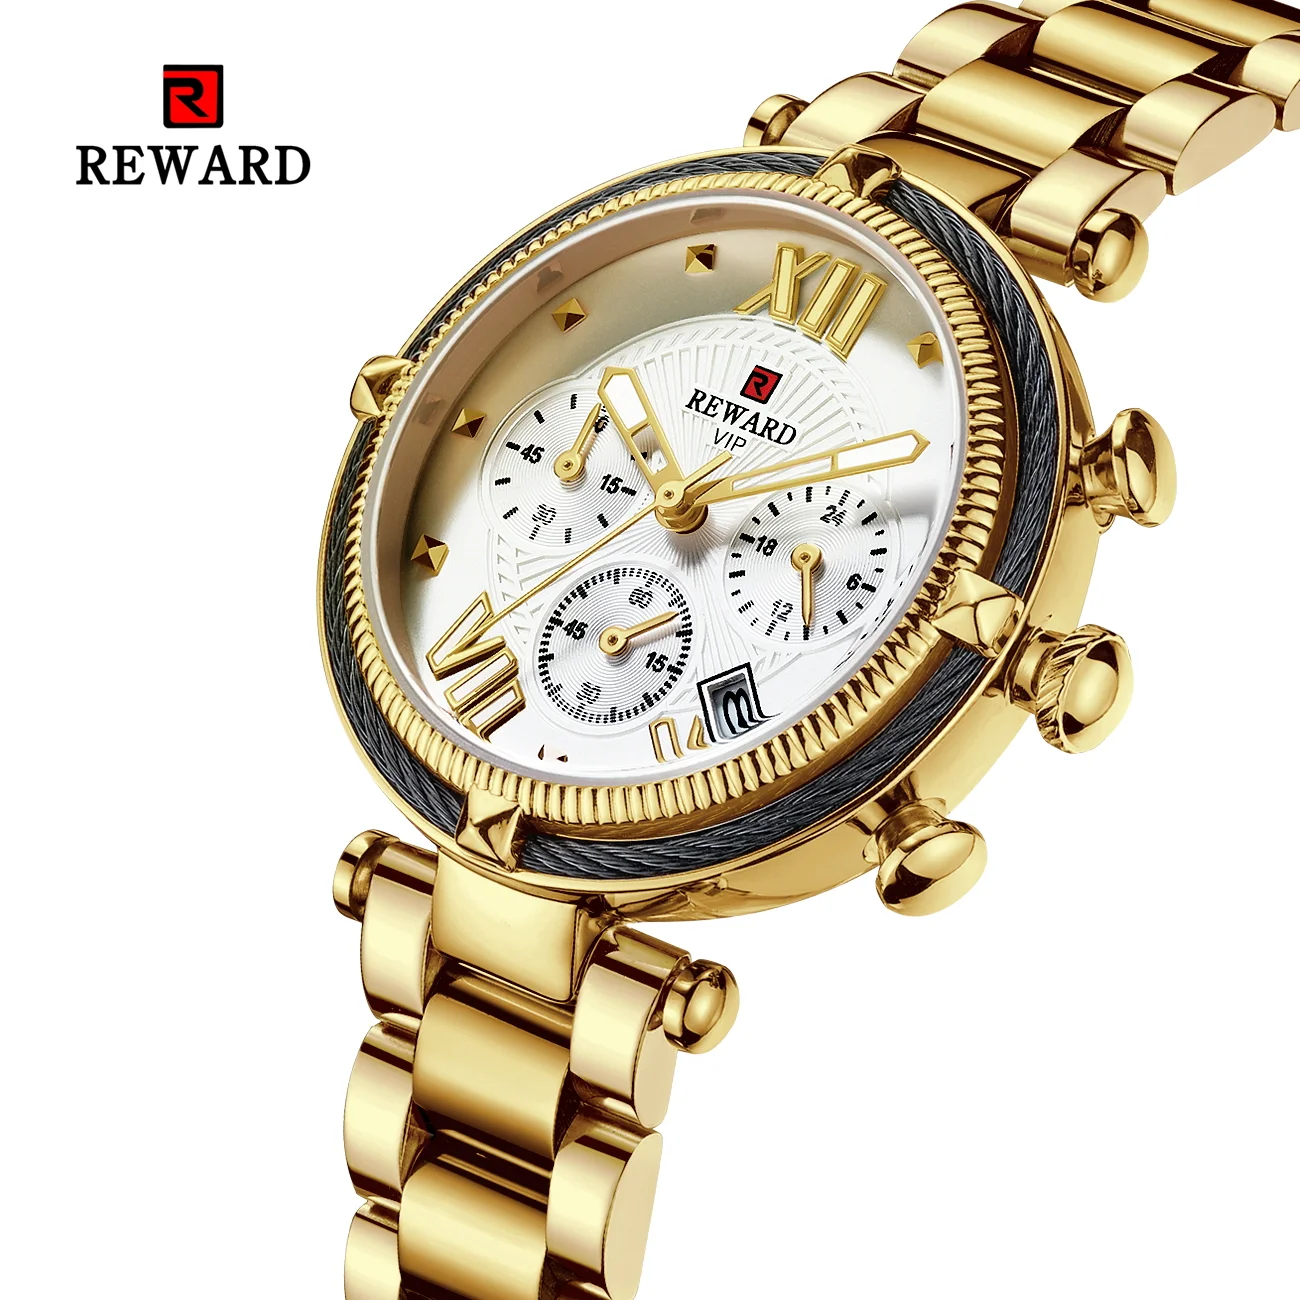 REWARD Hot Brand Luxury Women Watches Fashion Stainless Steel Band Quartz Sport Watch Luminous Ladies Wrist Watch RD63084L